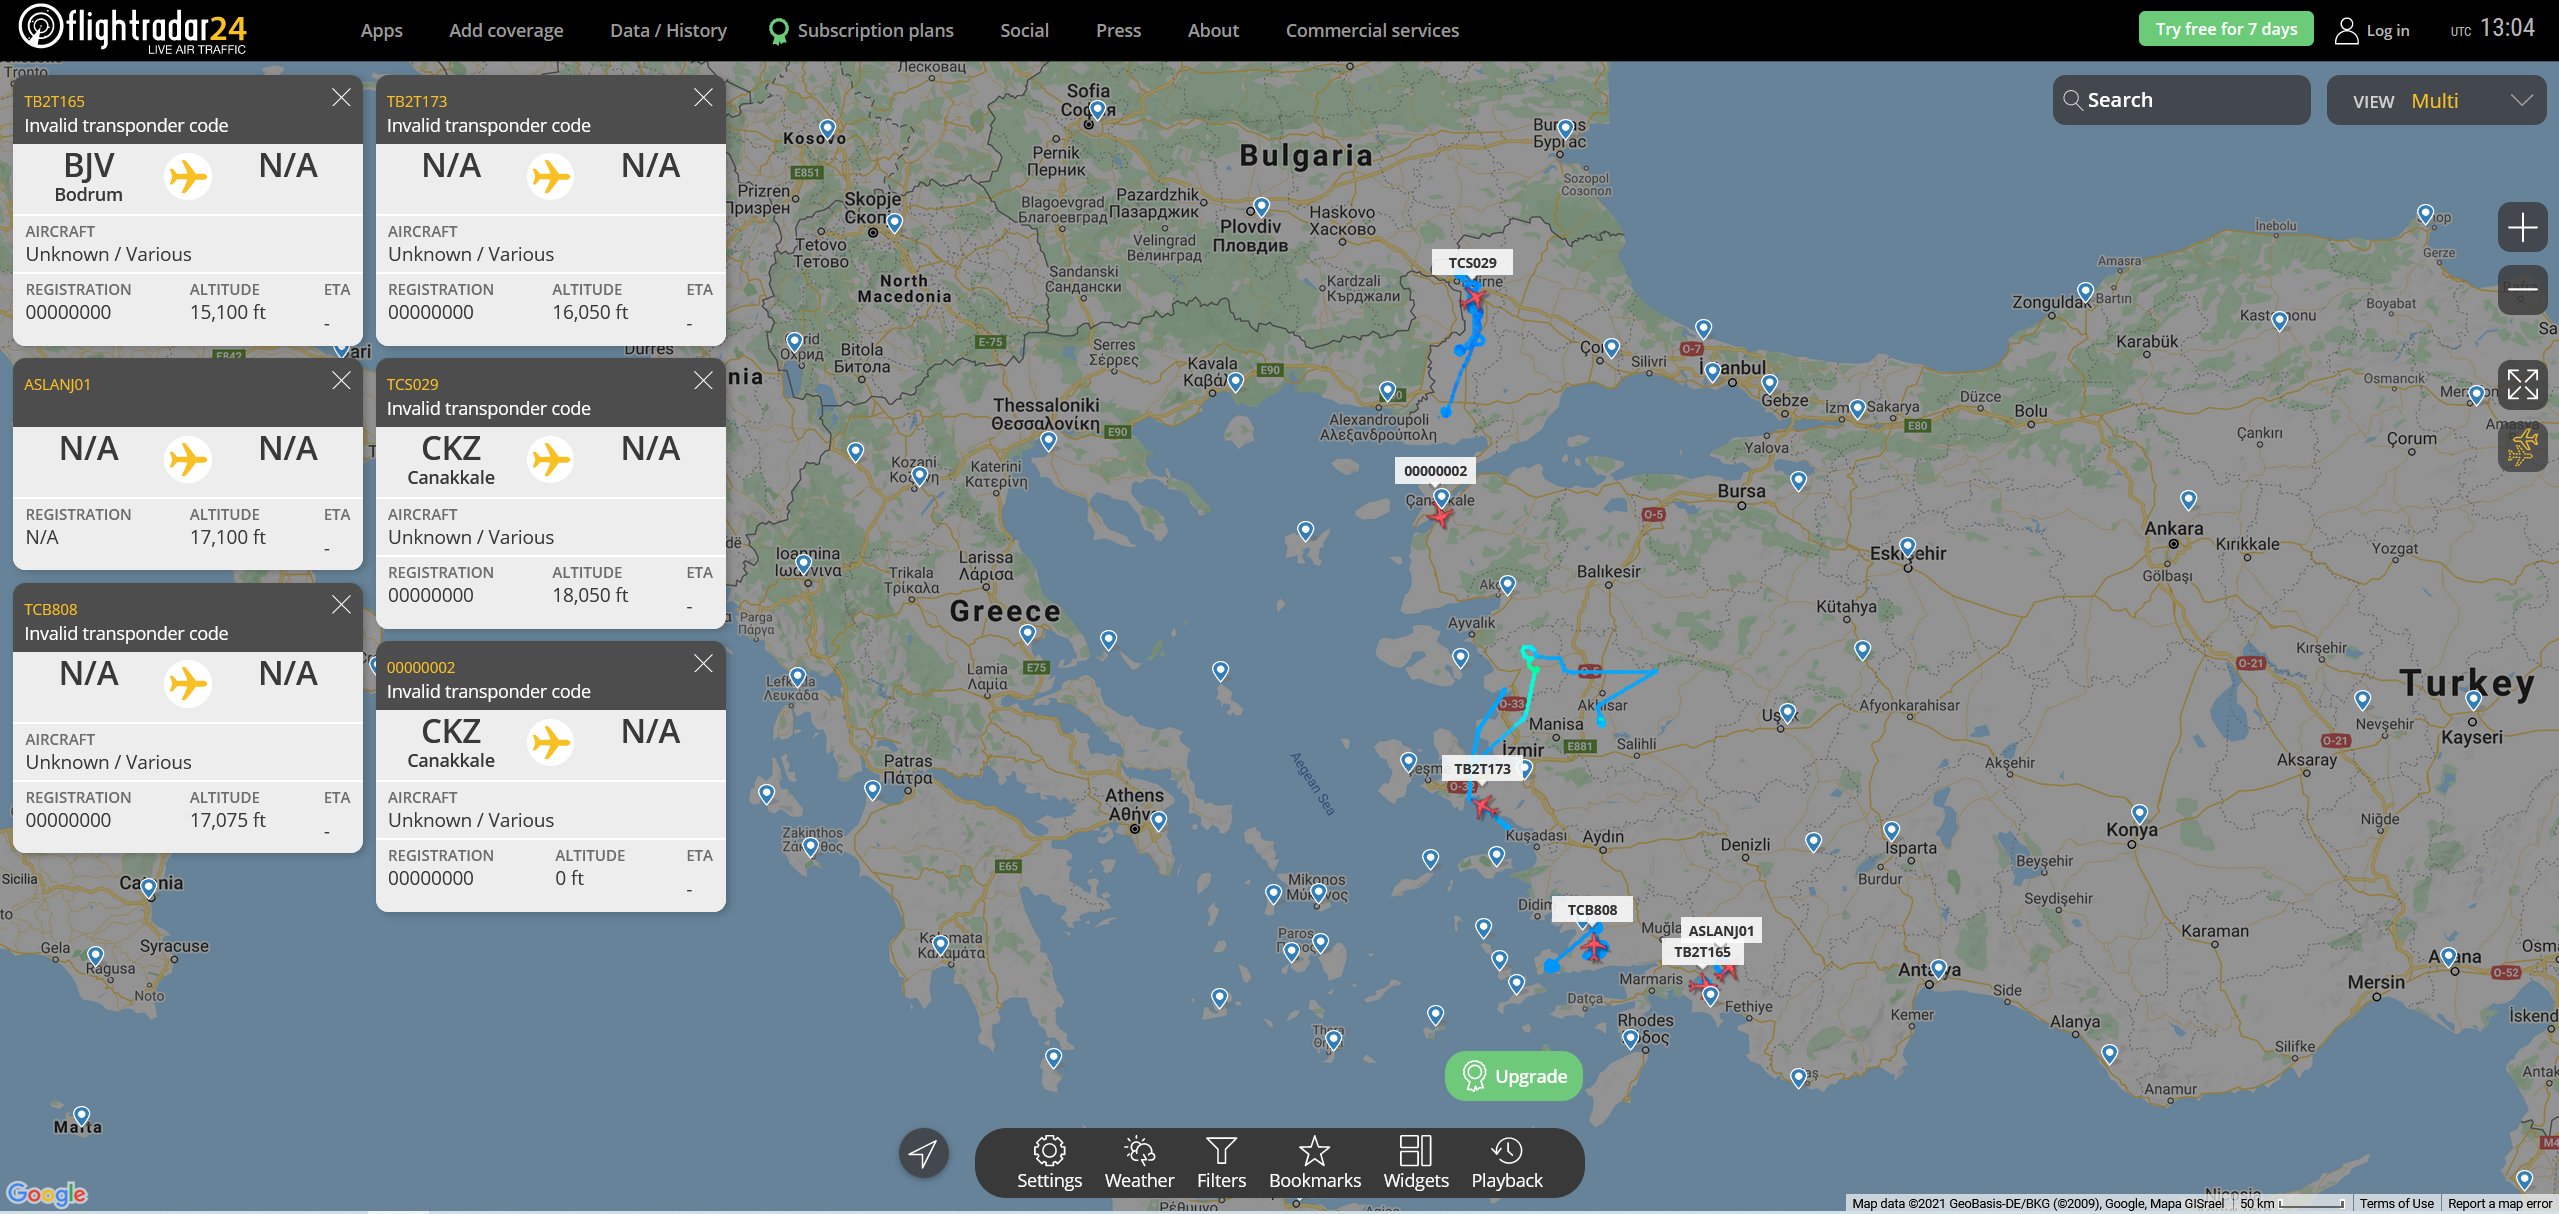 Ελληνοτουρκικά: Ξεκίνησε η μάχη των drones στο Αιγαίο θα μπορούσε να πει κανείς αφού επτά τούρκικα και ένα ελληνικό βρέθηκαν απέναντι.